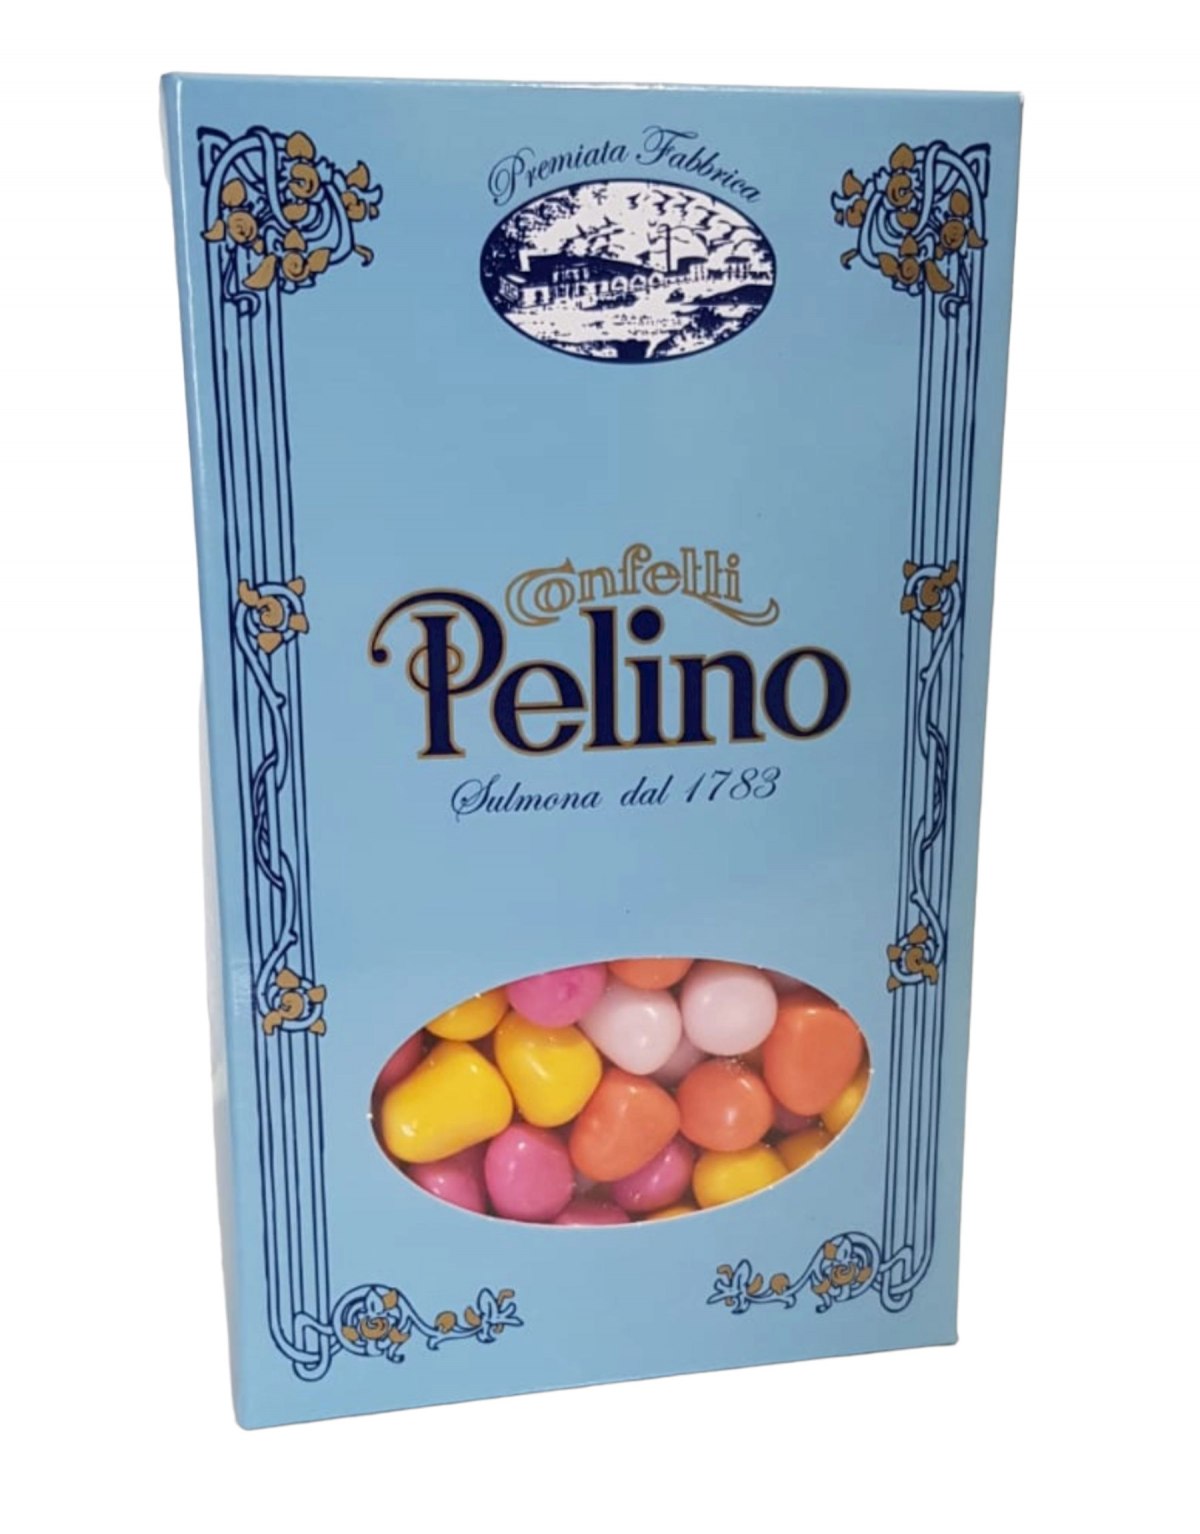 Confetti Pelino - Fruttini